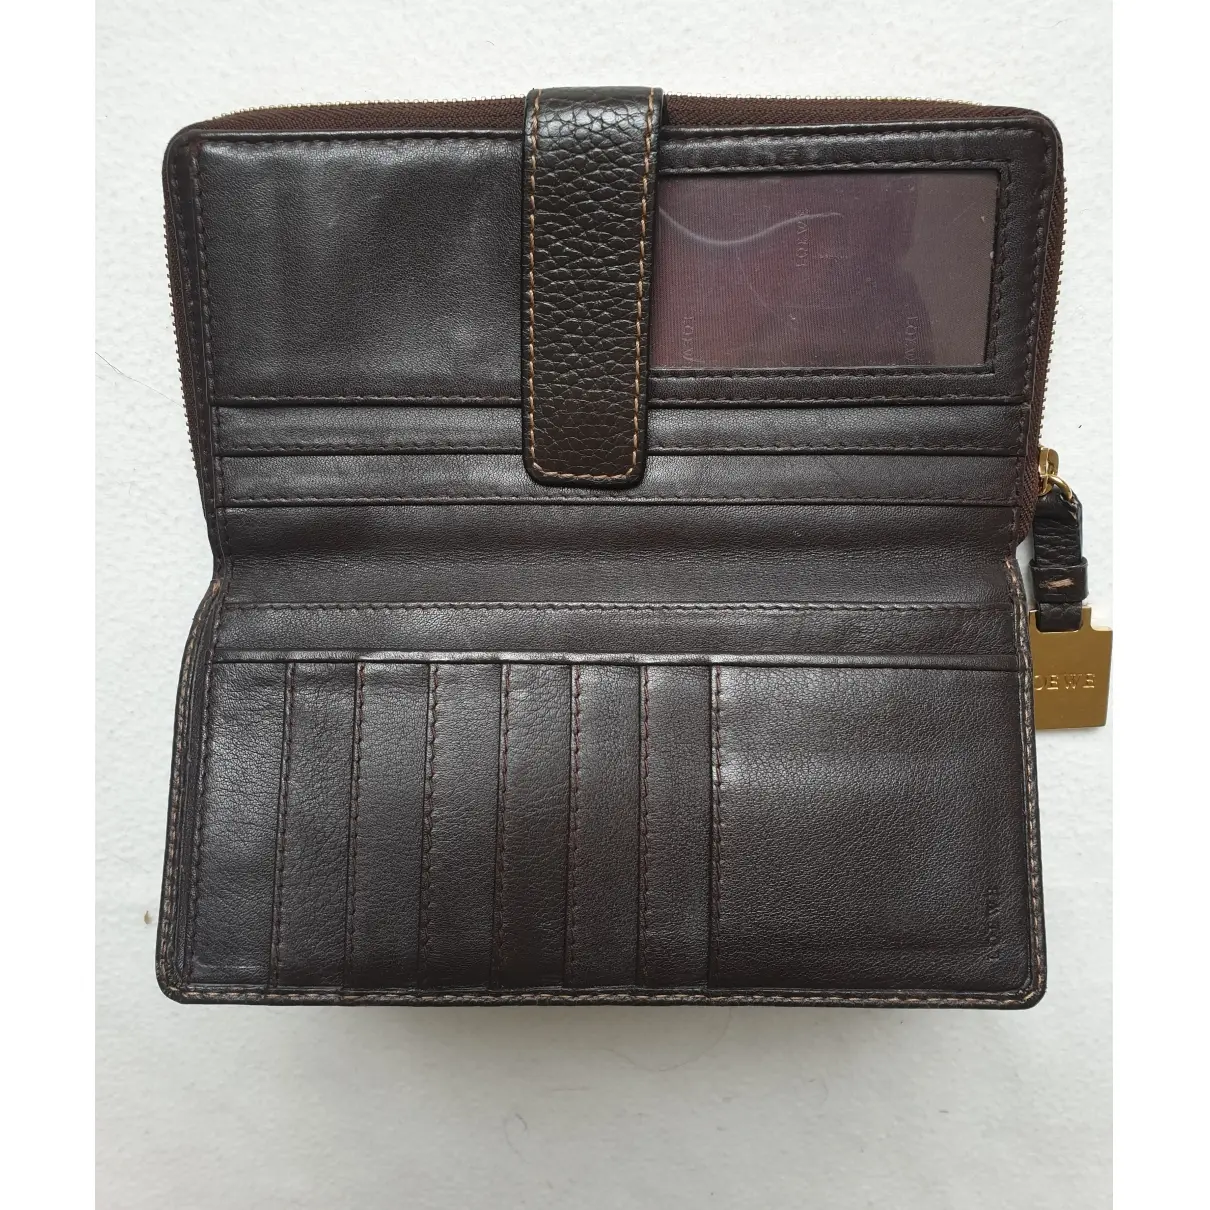 Buy Loewe Leather wallet online - Vintage